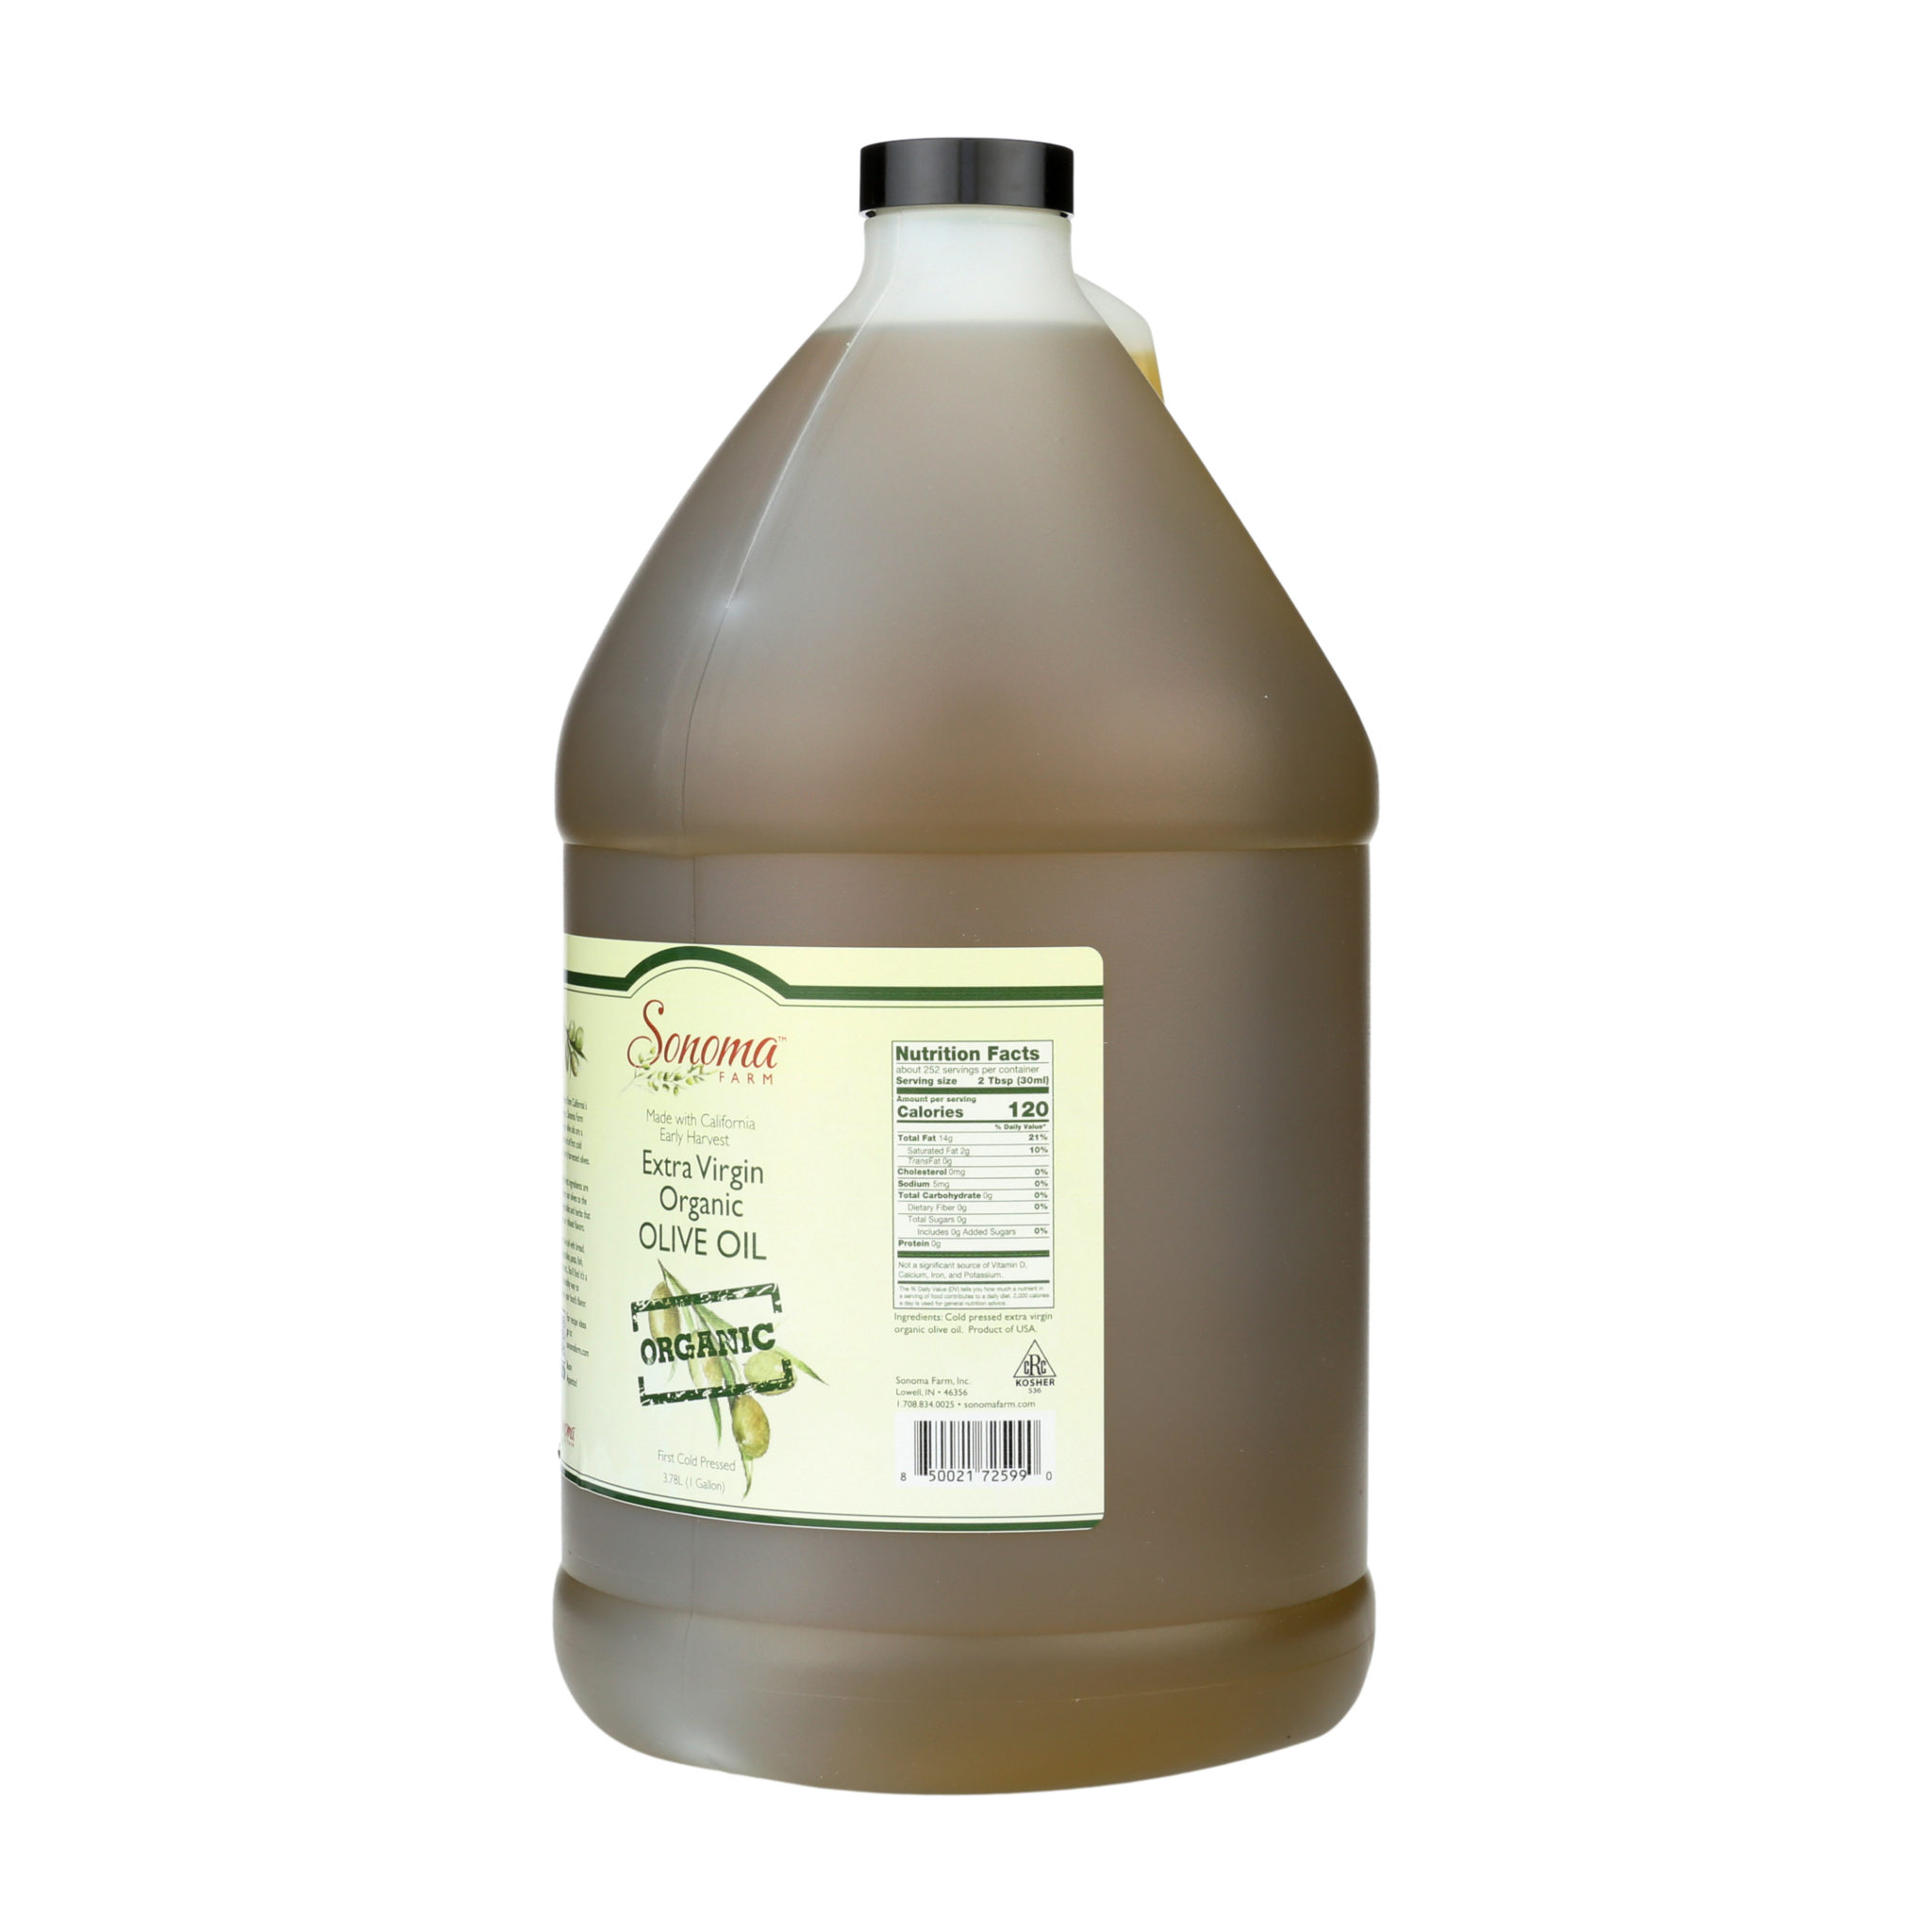 Premium olive oil 100% pure unrefined extra virgin bulk 32 oz - 1 gallon  grade a, 32 oz / 1 Quart 